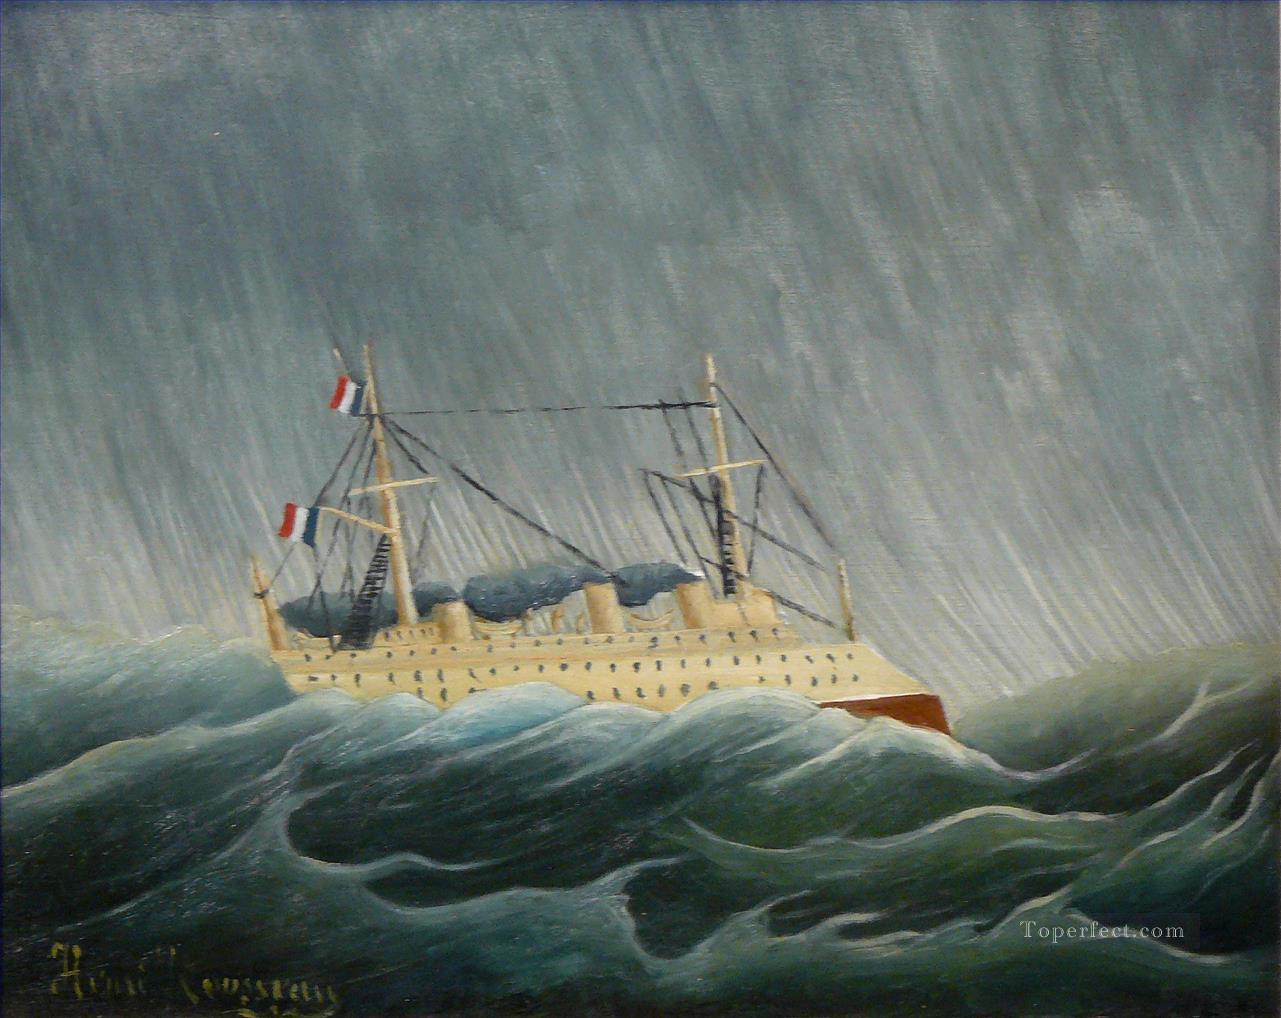 嵐に翻弄された船 アンリ・ルソー ポスト印象派 素朴原始主義油絵